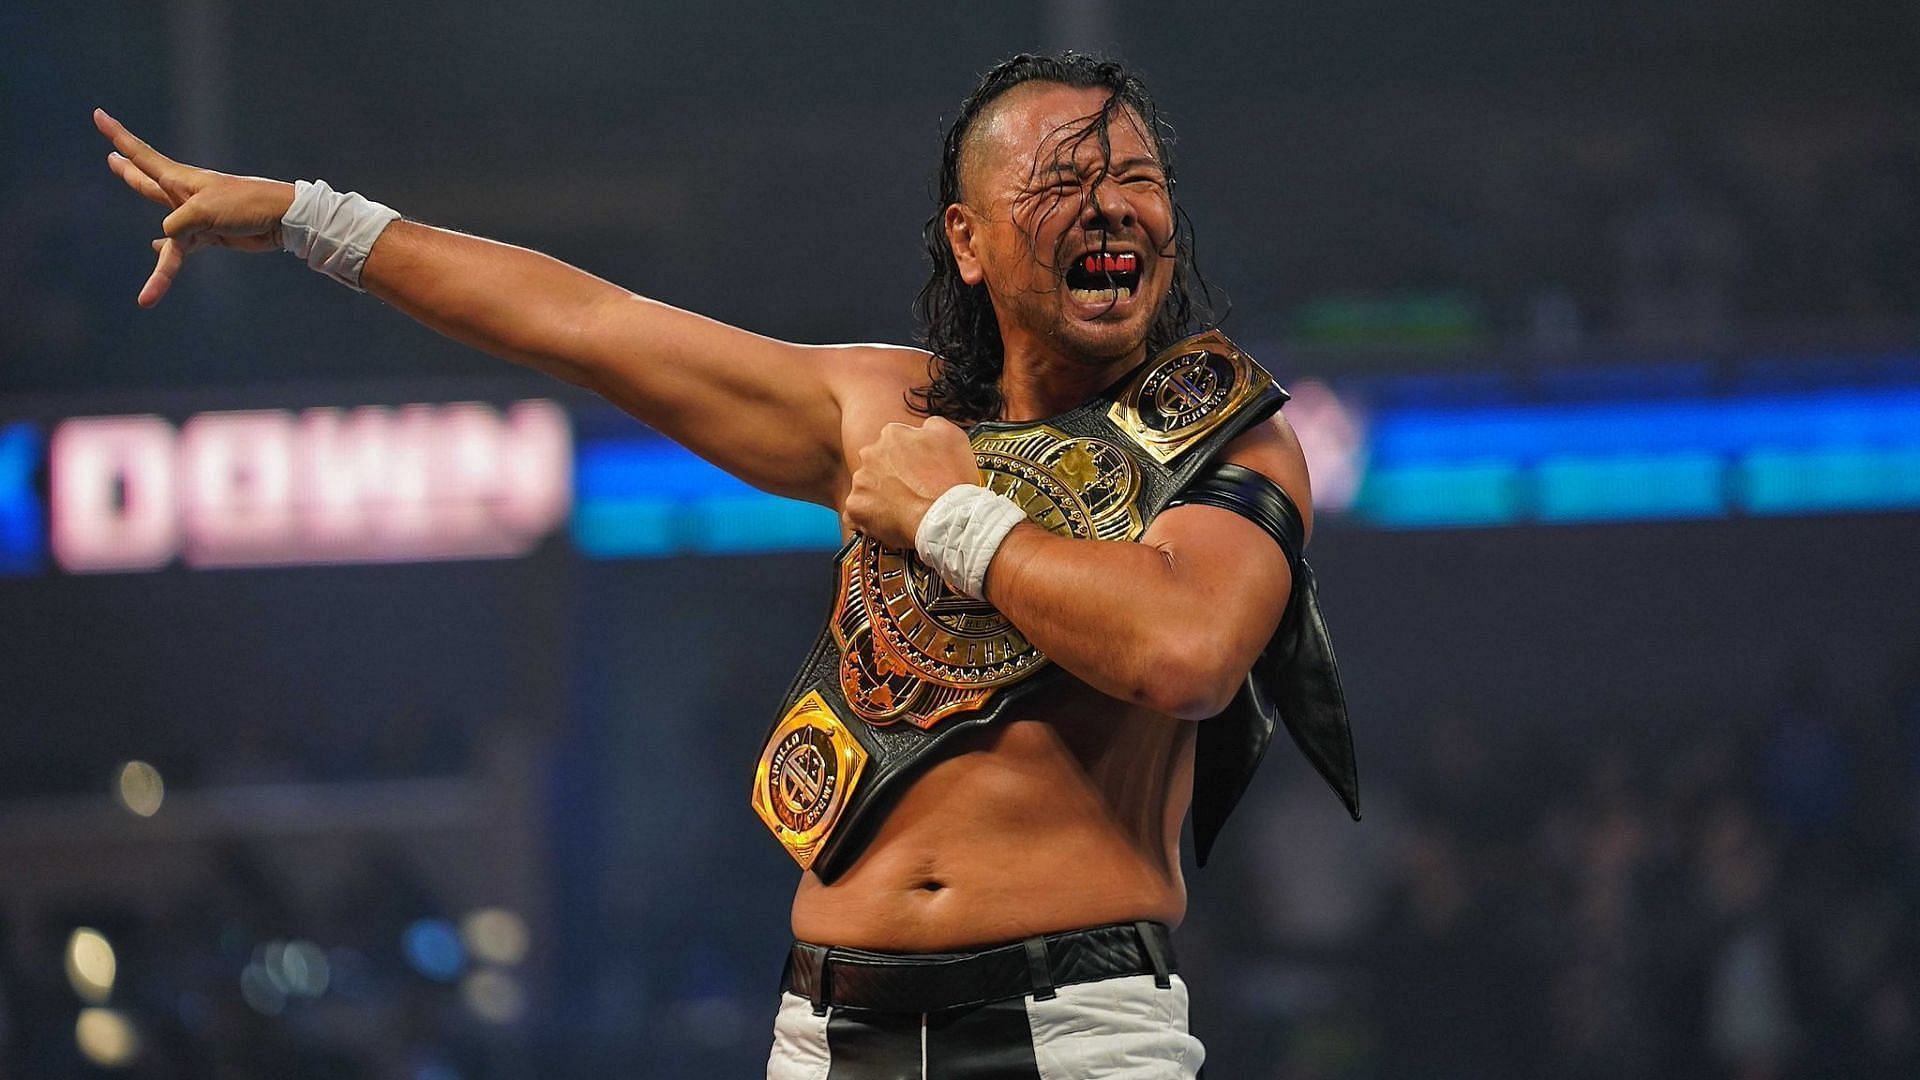 Shinsuke Nakamura faced the Great Muta